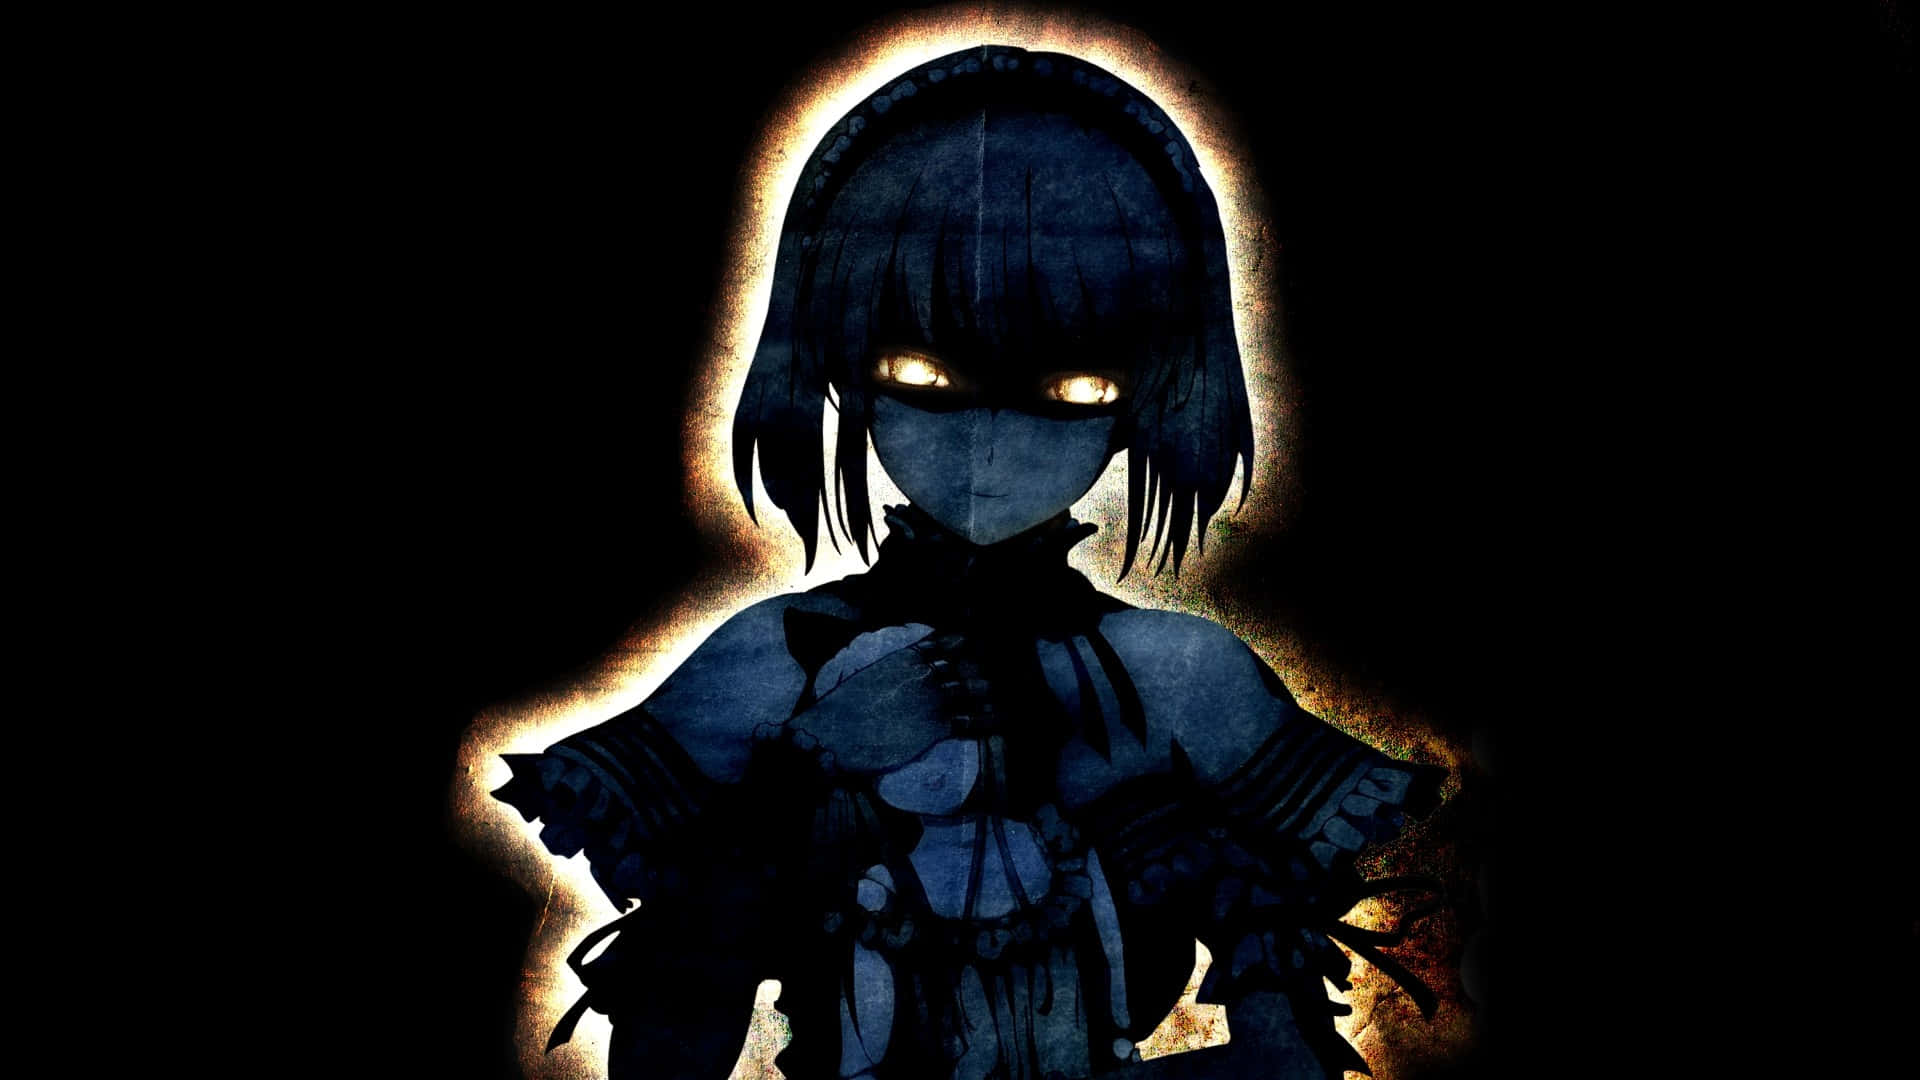 Unachica De Anime Oscura Que Vive En Un Mundo Misterioso. Fondo de pantalla